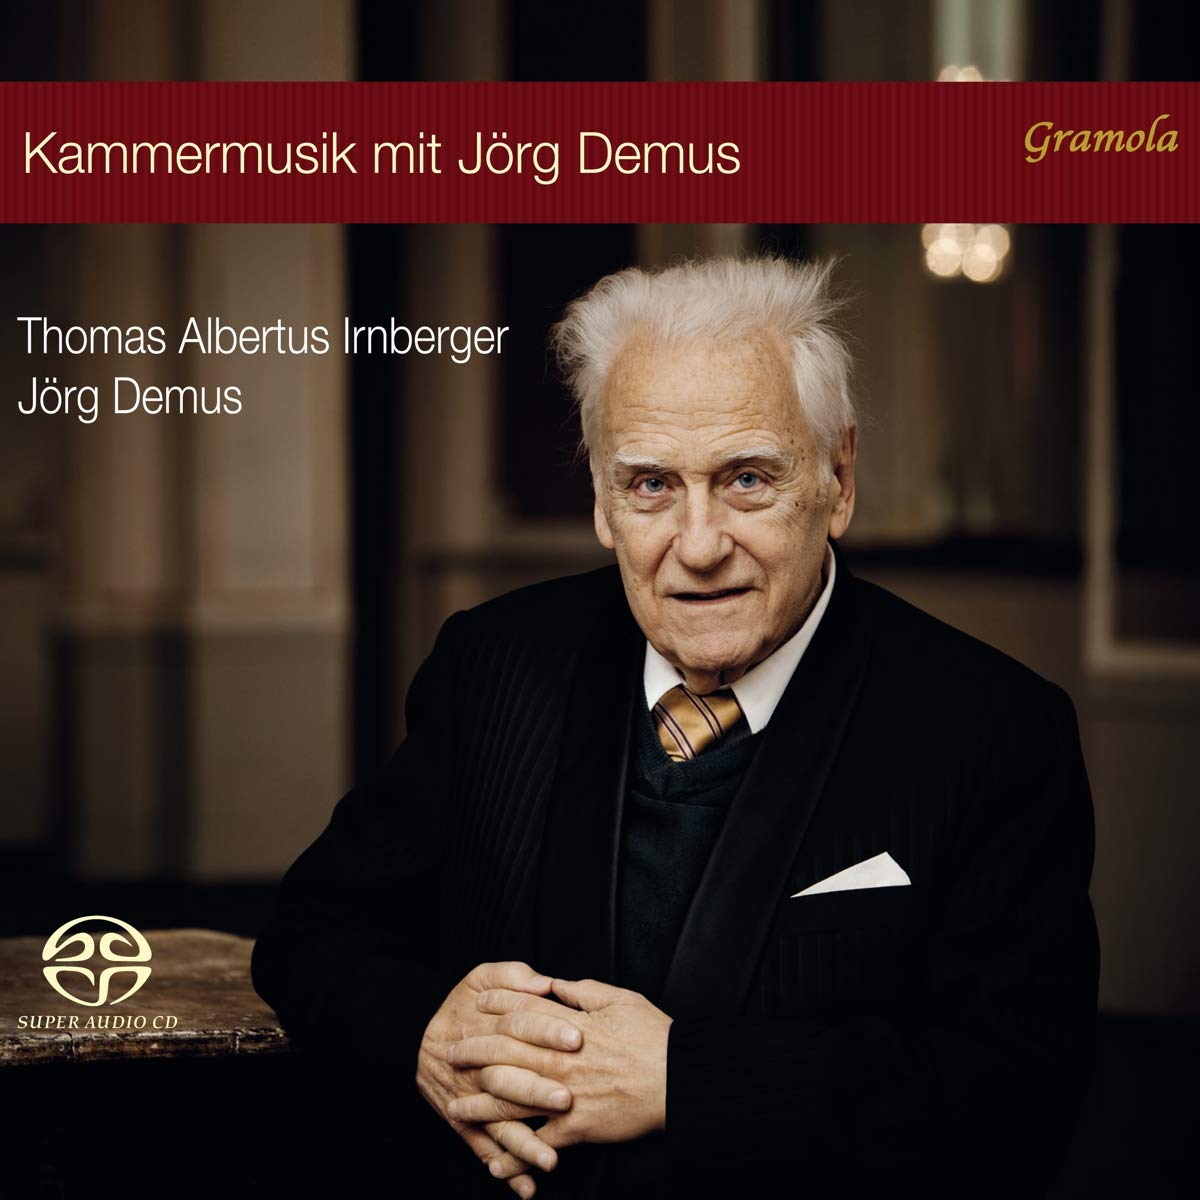 Audio Cd Jorg Demus / Thomas Albertus Irnberger - Kammermusik Mit Jorg Demus (3 Cd) NUOVO SIGILLATO, EDIZIONE DEL 29/01/2020 SUBITO DISPONIBILE